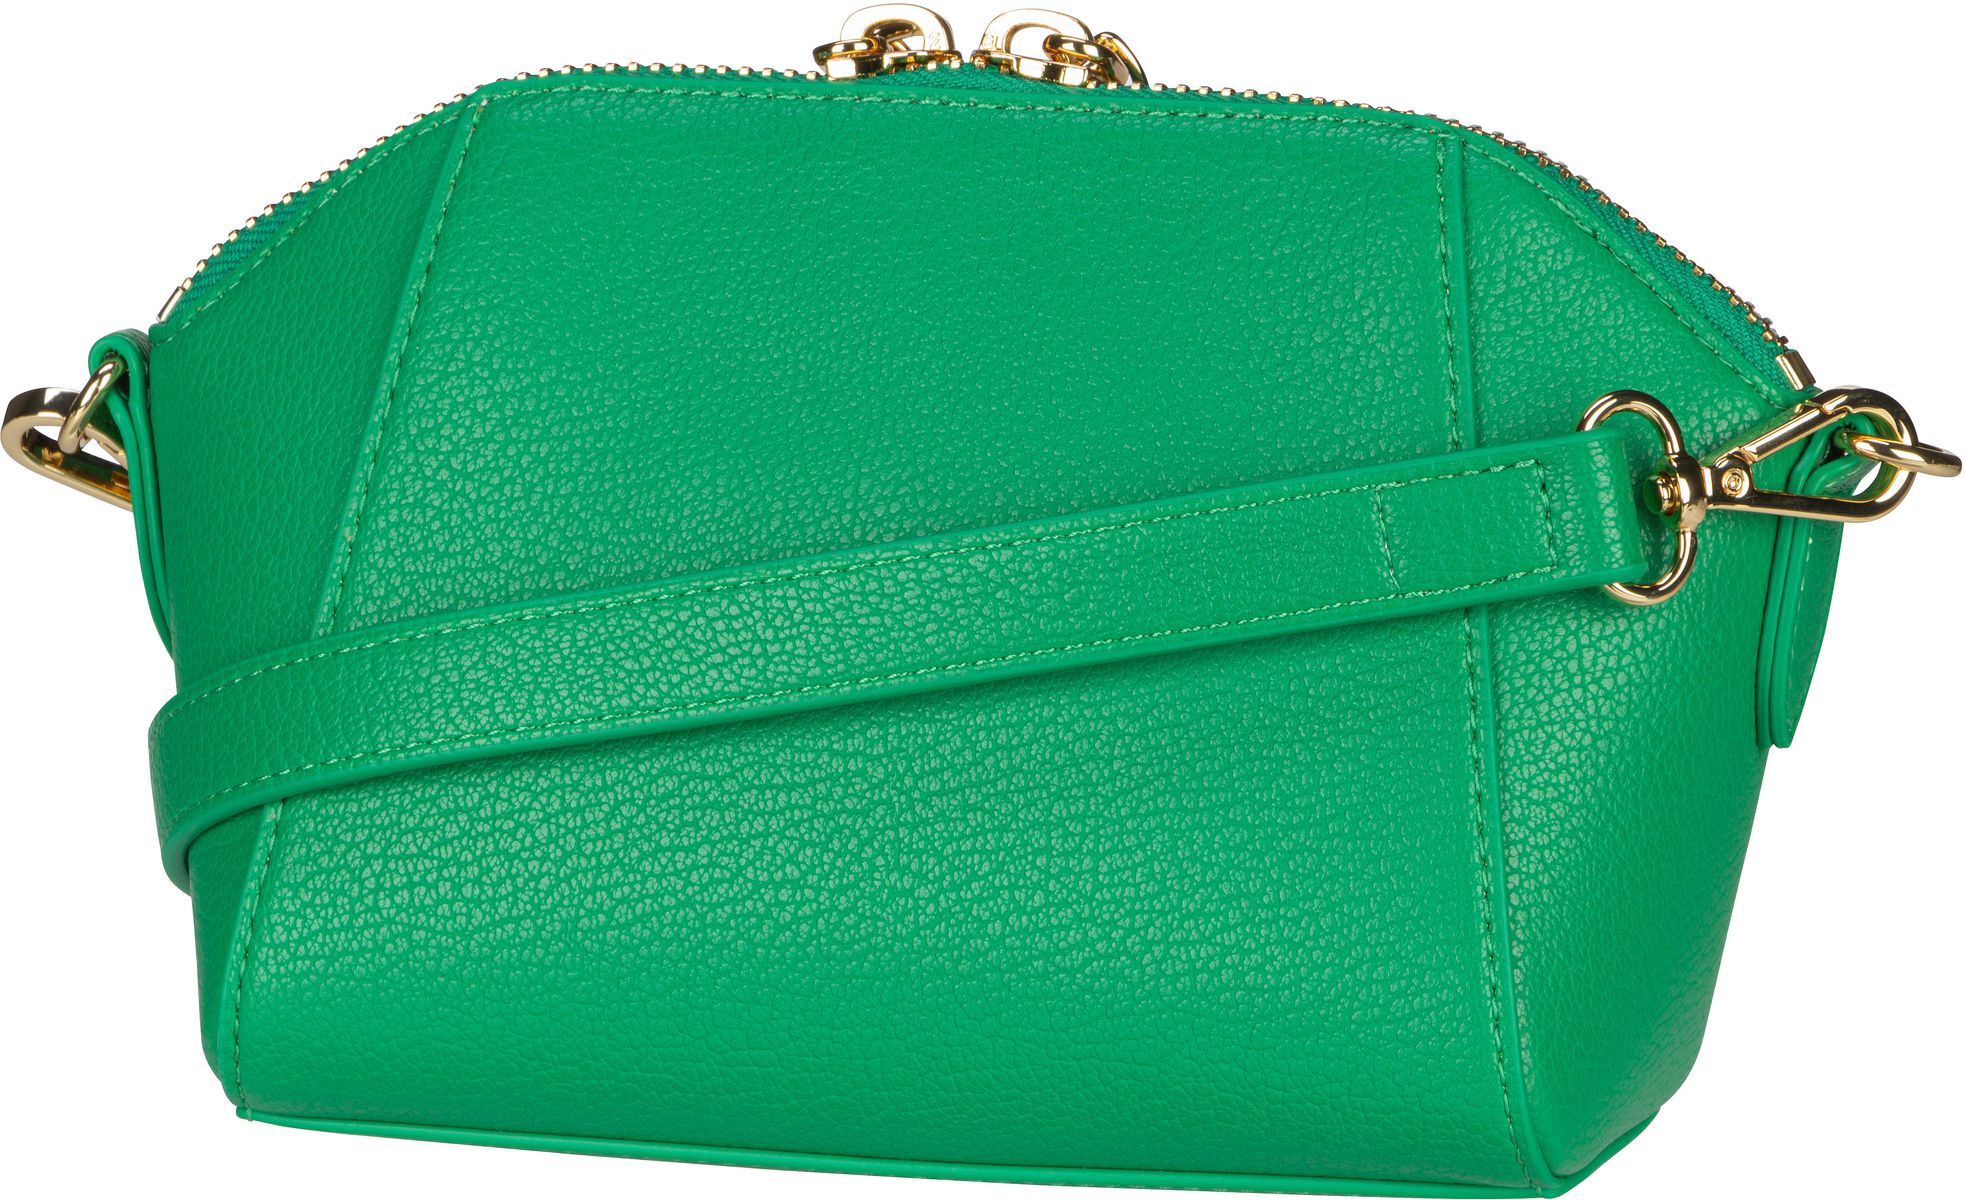 Love Moschino Zipper Catcher Crossbody Bag 4093 - Green